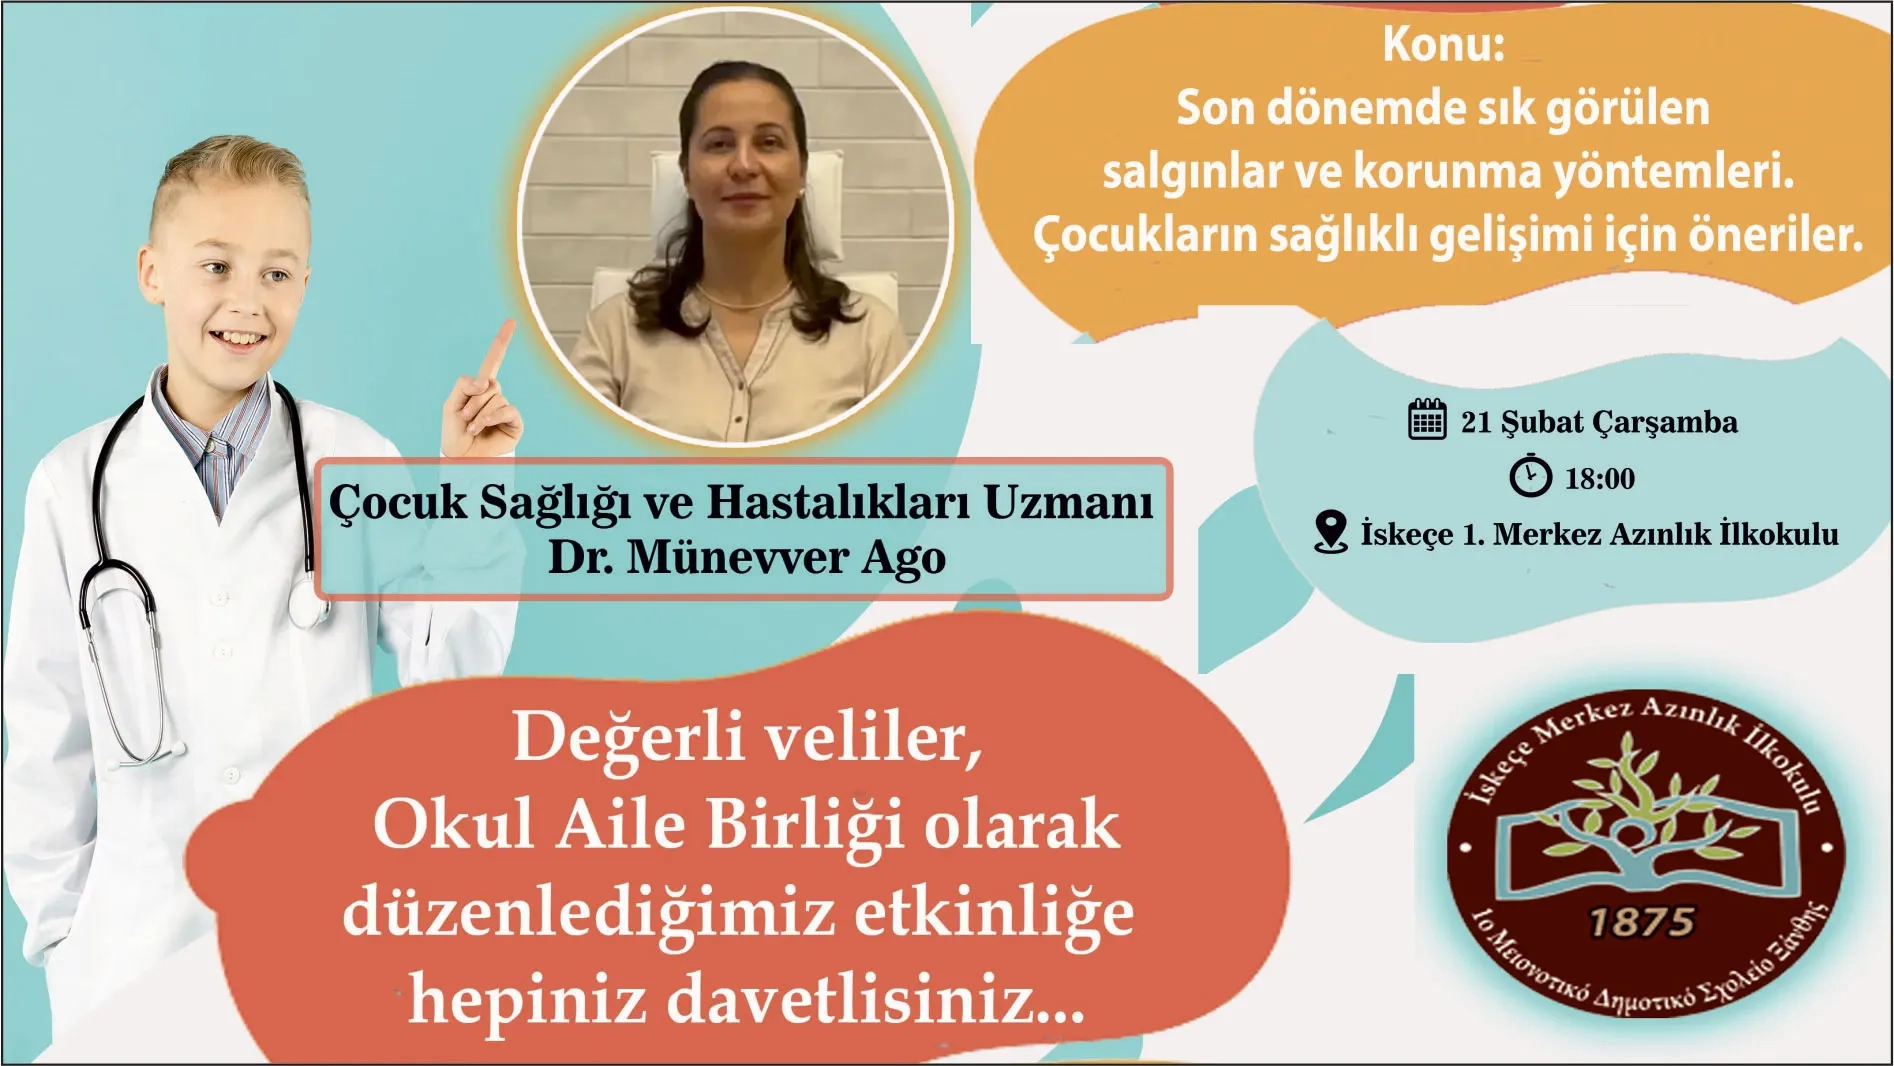 İskeçe Merkez Türk İlkokulu’nda çocuk sağlığı için söyleşi